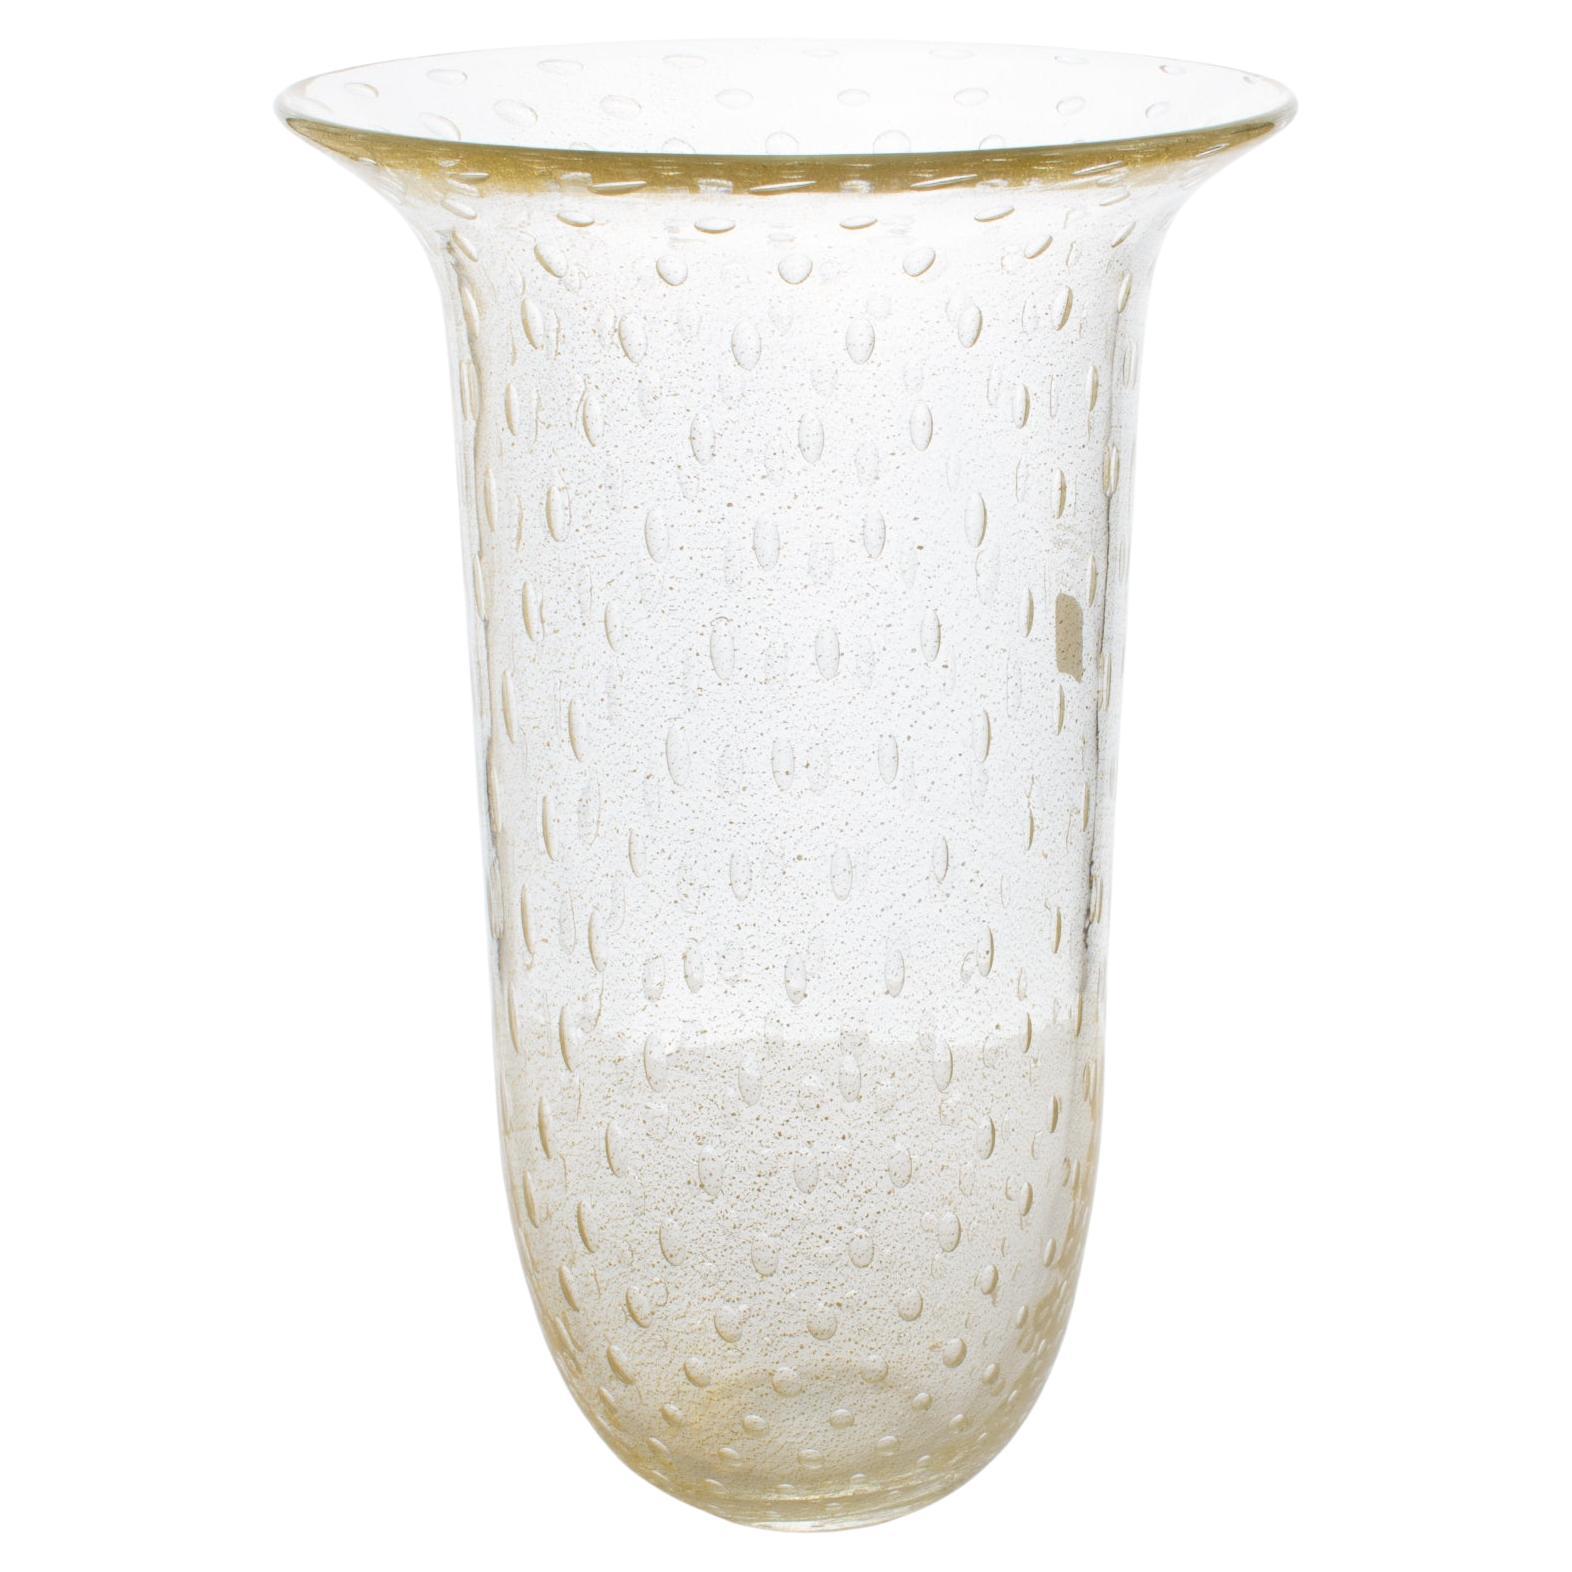 Italian Art Glass Murano Vase Gold Flakes and Bubbles by Gambaro & Poggi For Sale